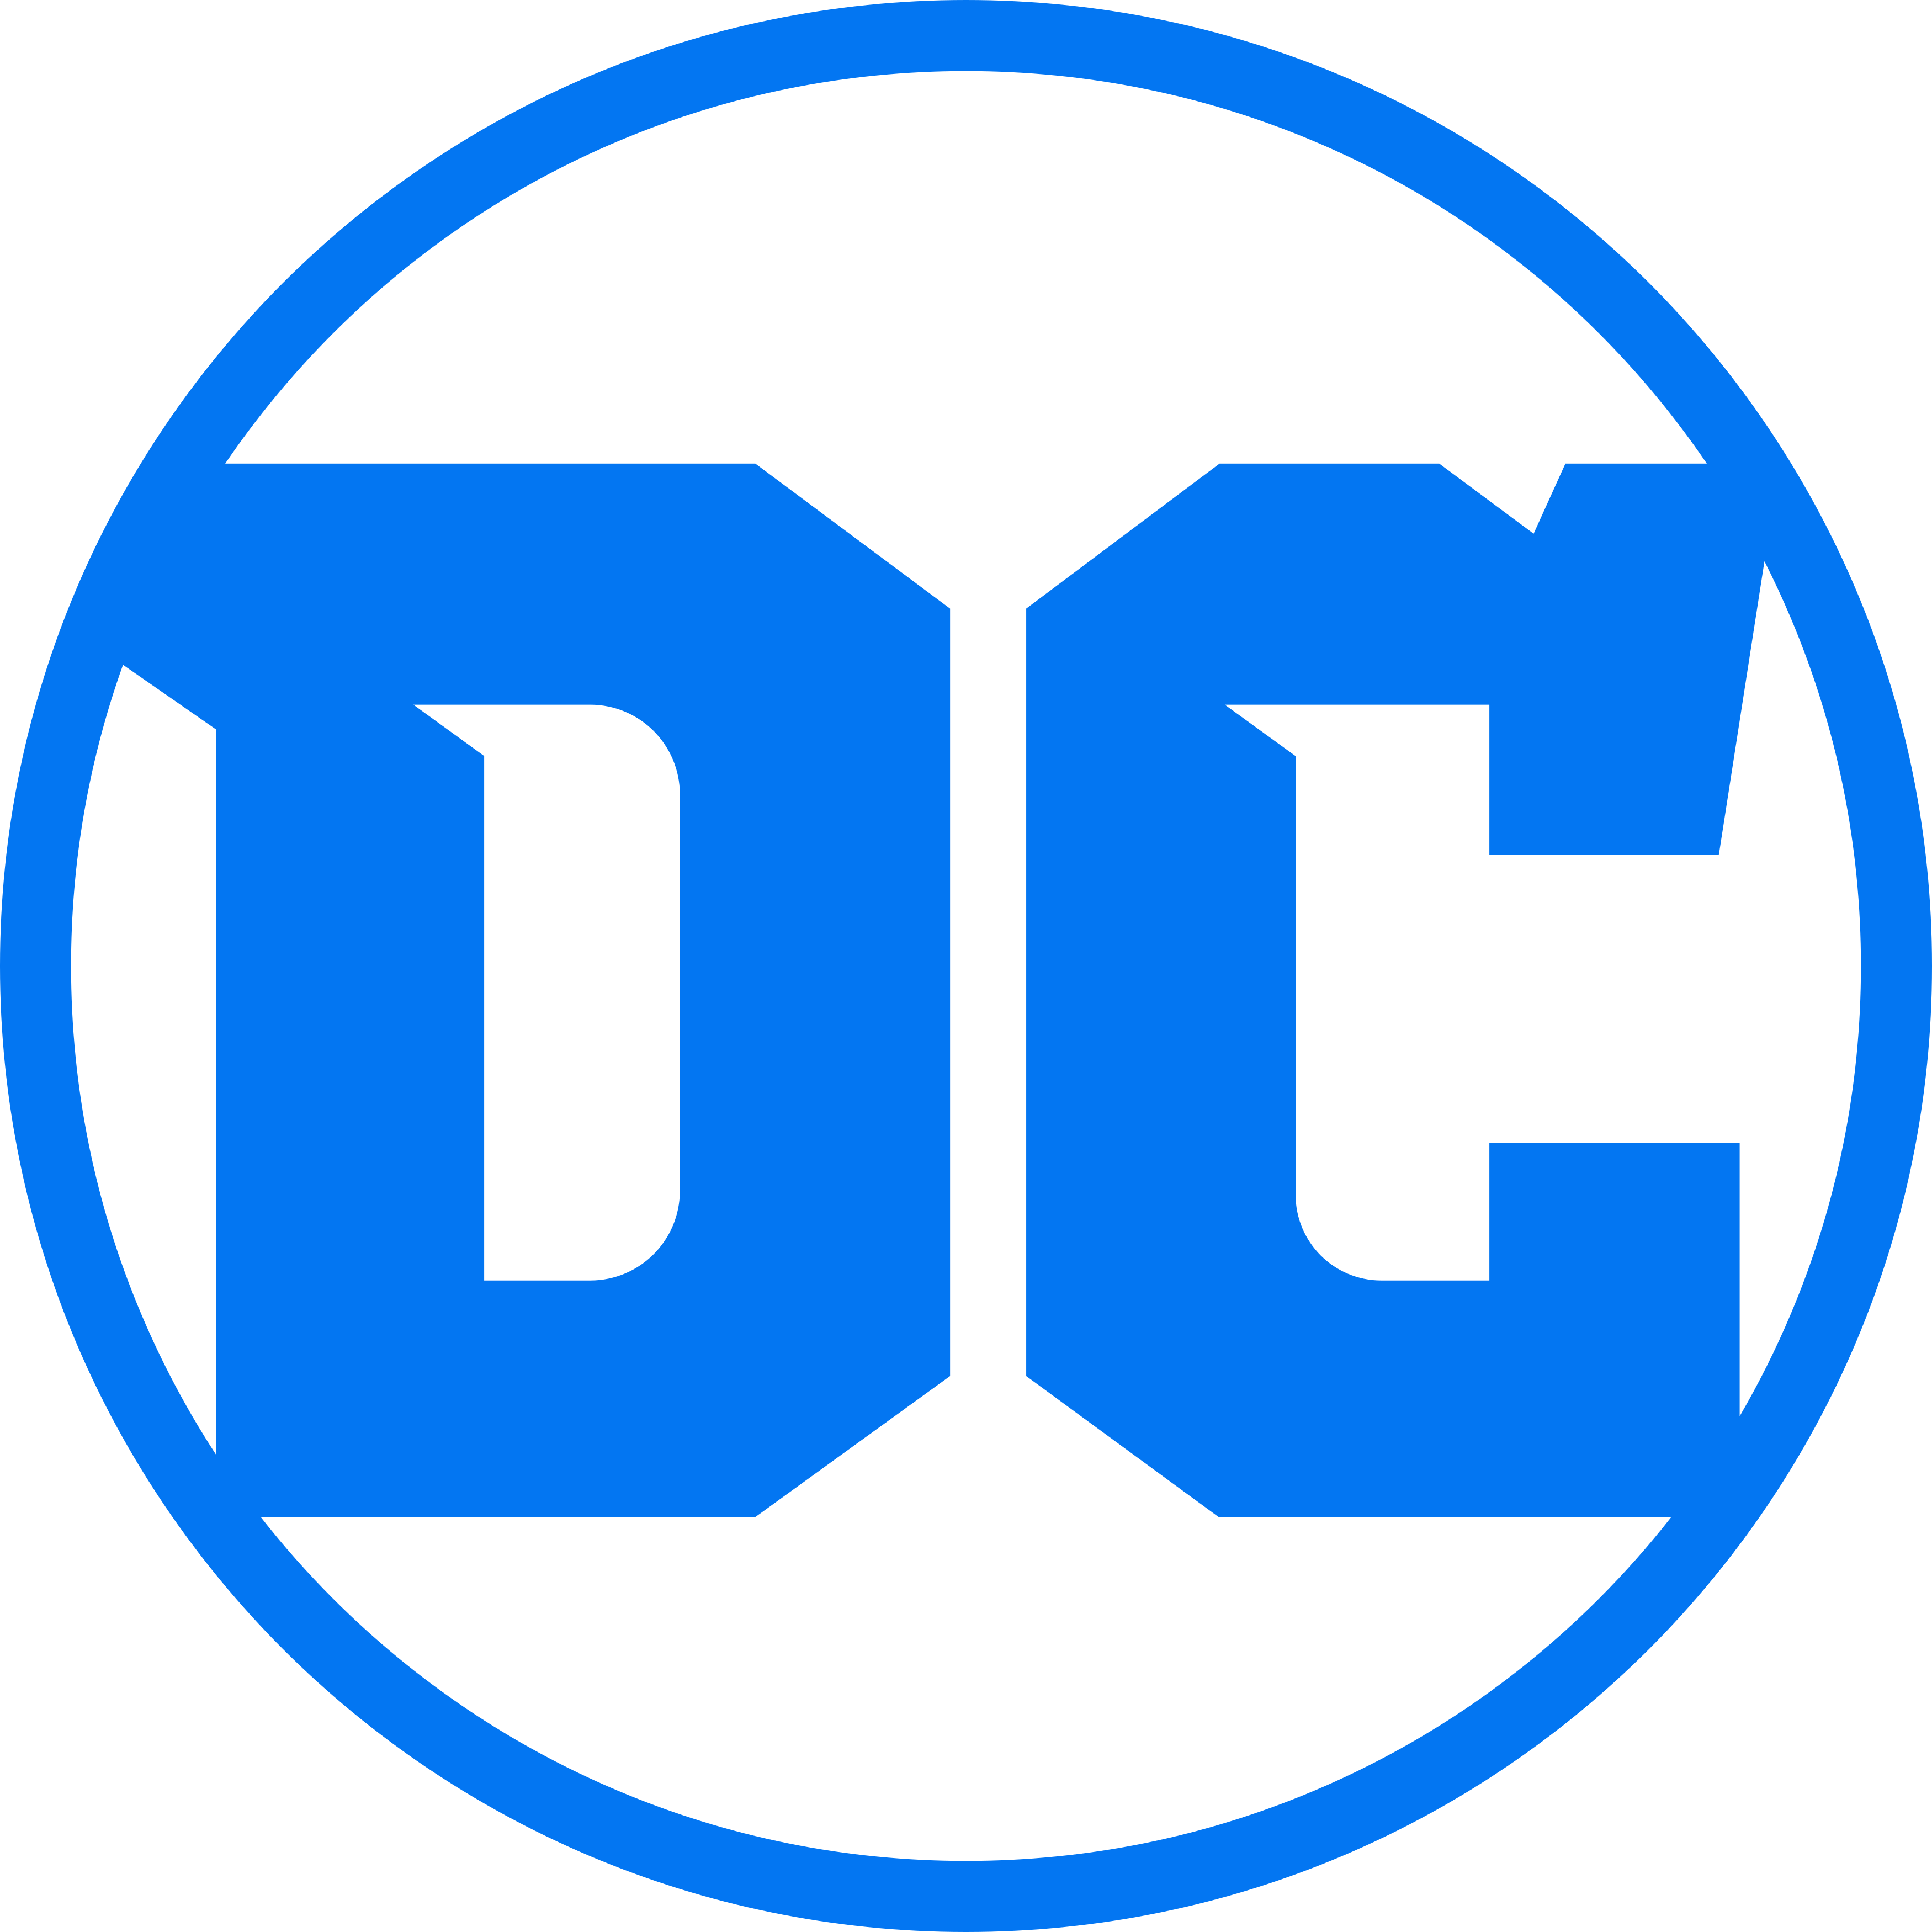 DC Logo PNG Image HD